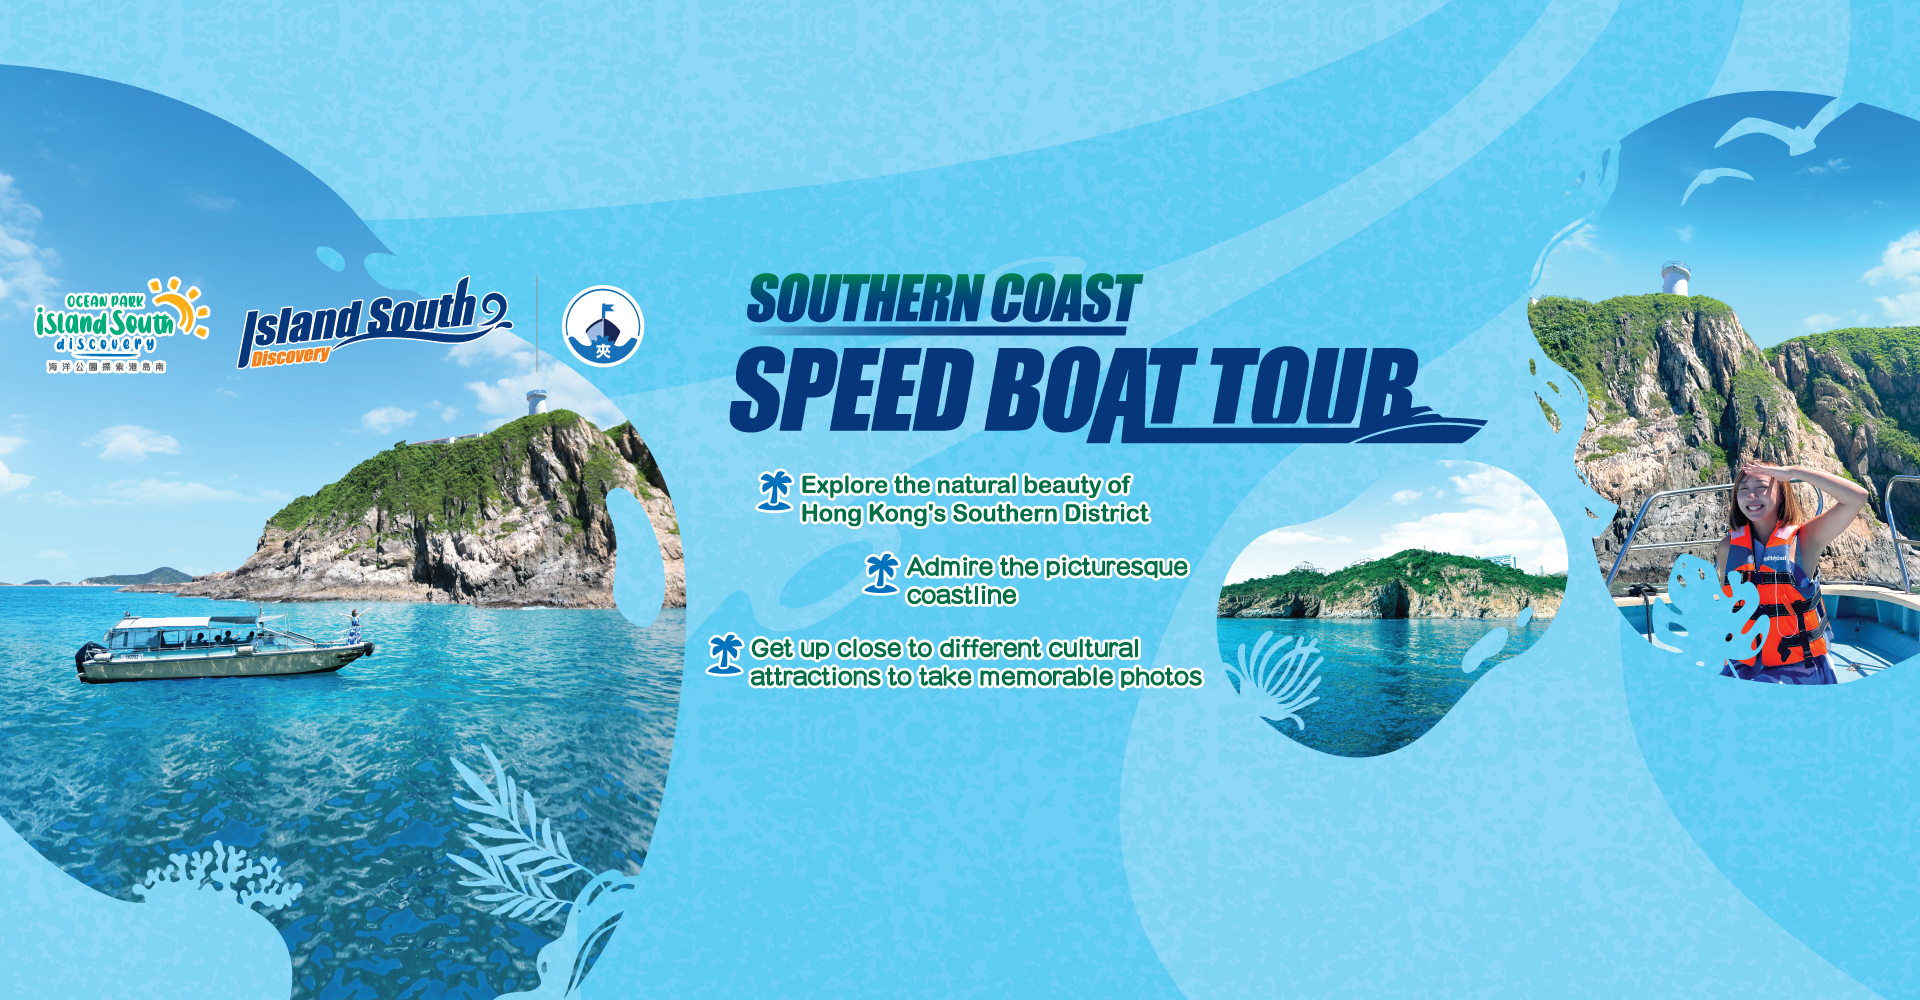 https://media.oceanpark.com.hk/files/s3fs-public/op-speed-boat-tour-innerpage-banner-en.jpg